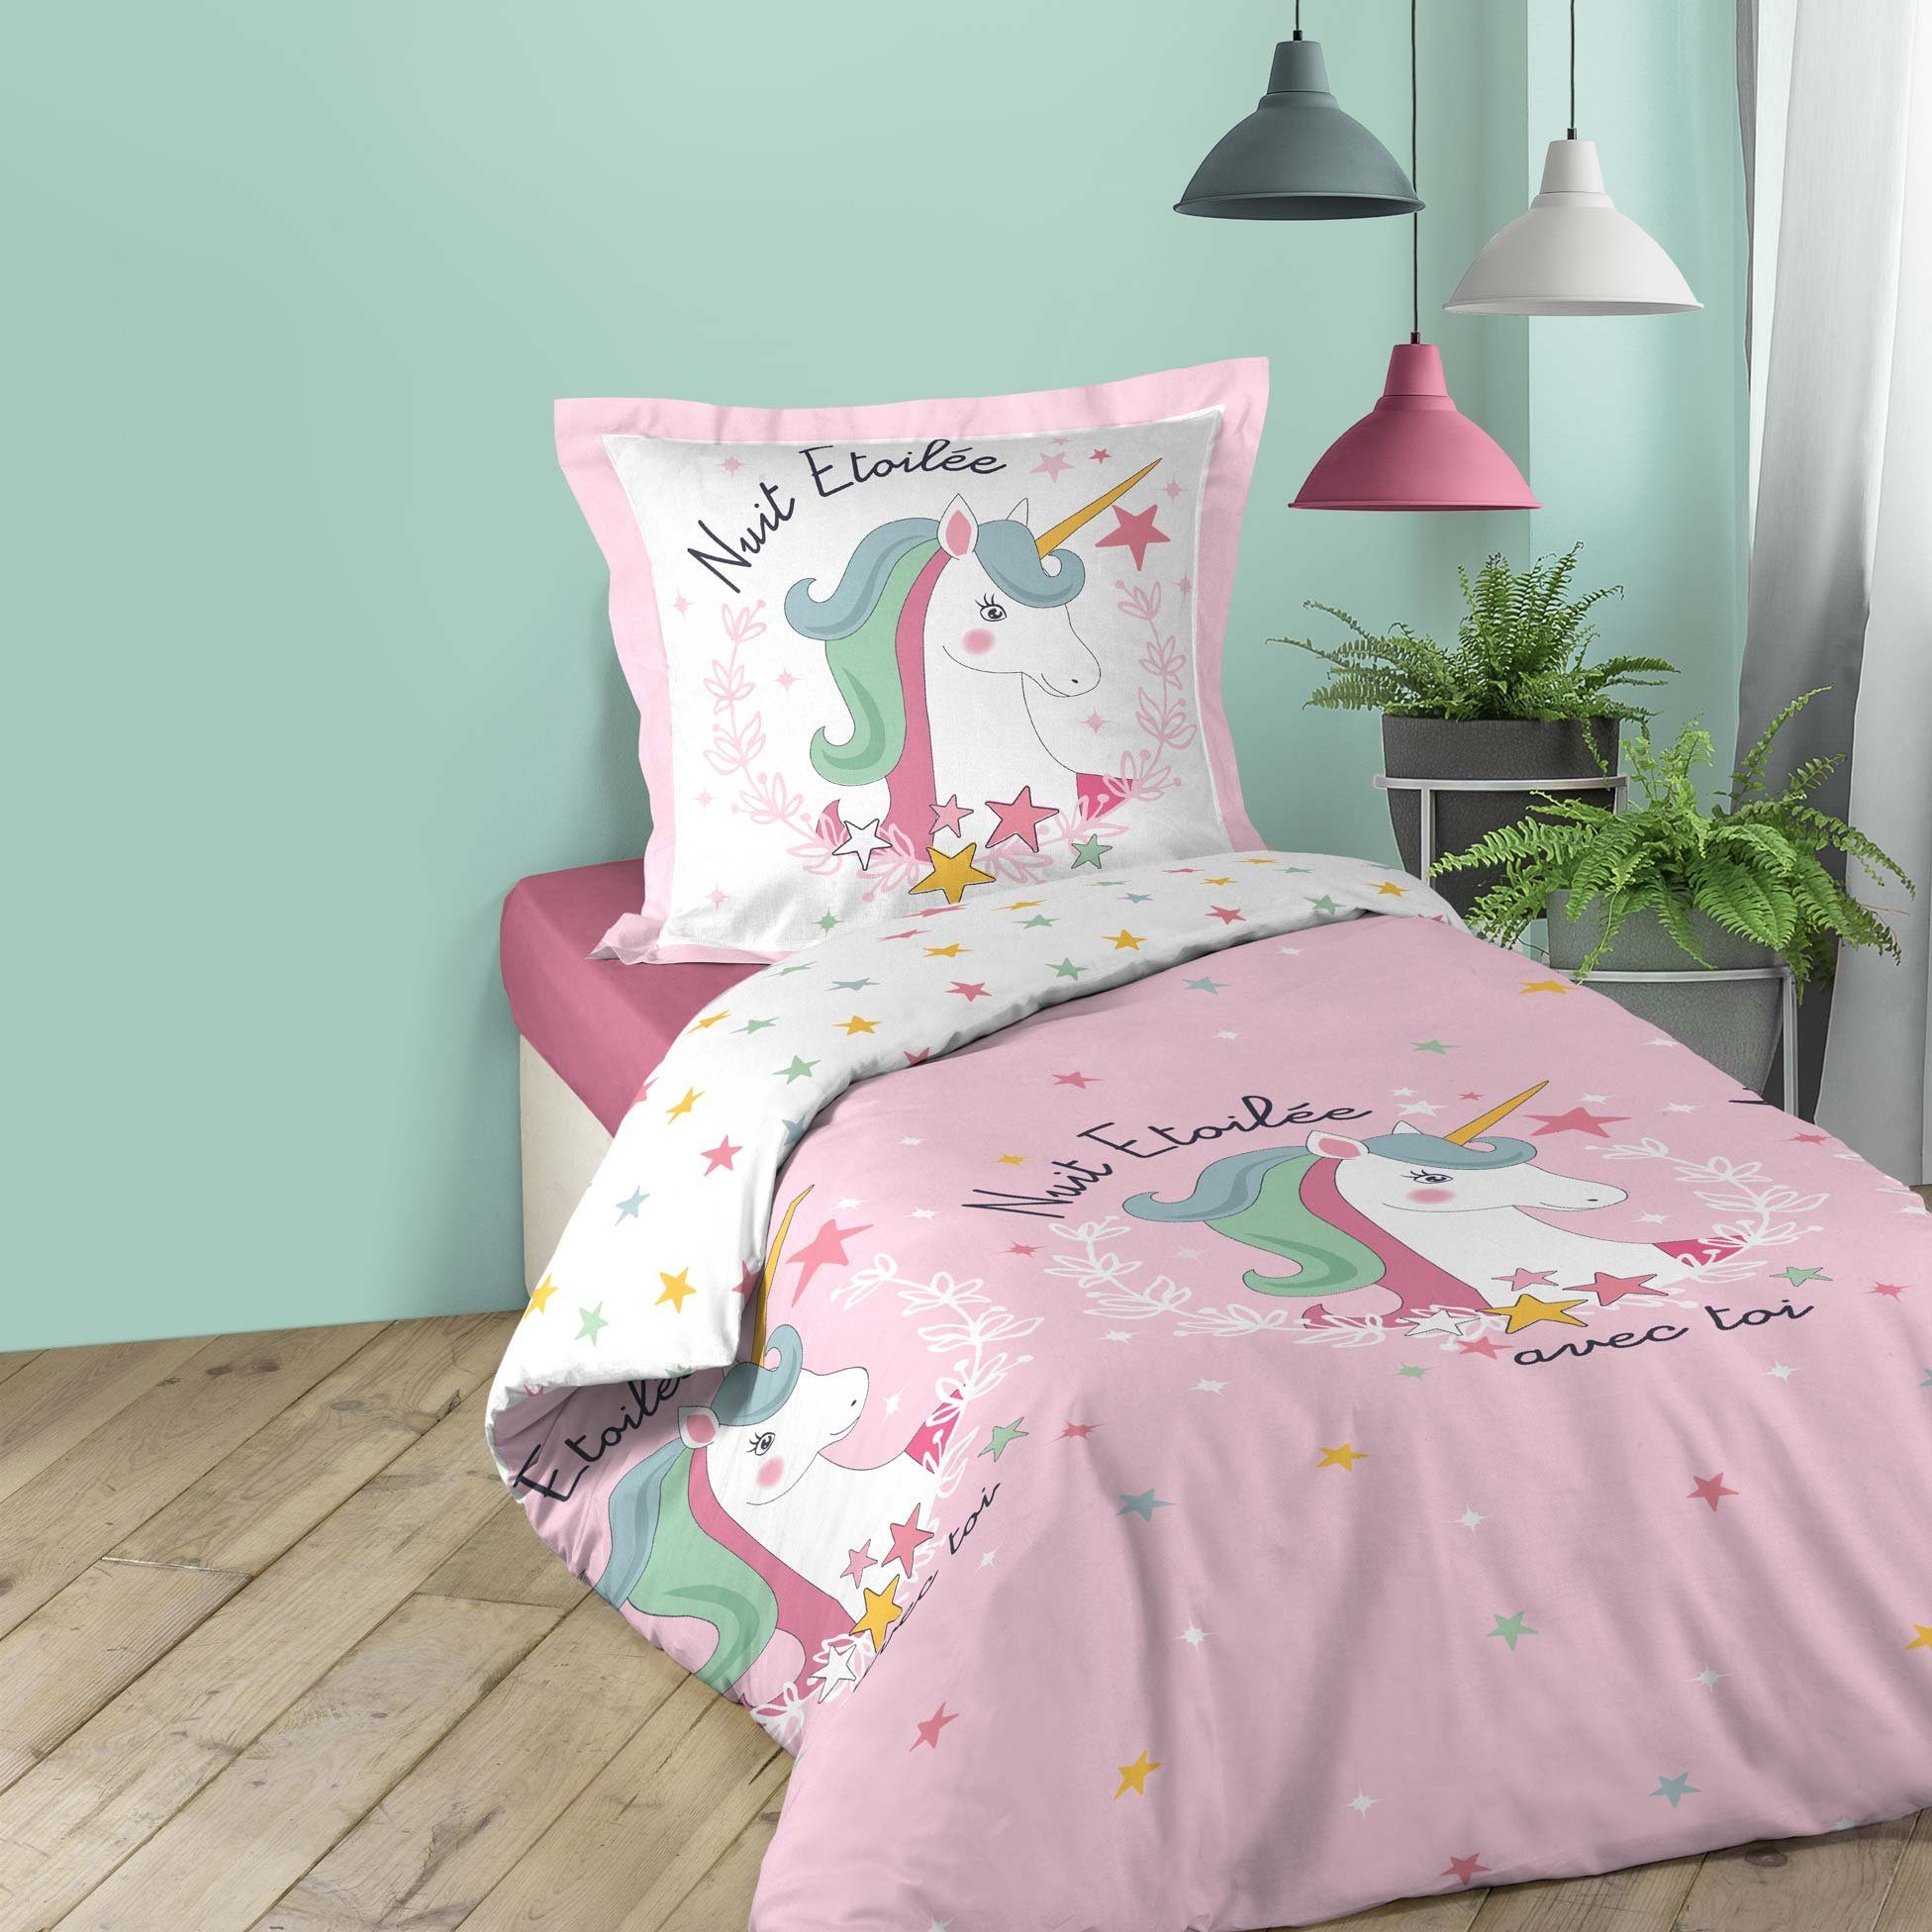 Kinderbettwäsche, dynamic24, 2tlg. Mädchen Bettwäsche 140x200cm Einhorn  Baumwolle Bettdecke Bettgarnitur rosa online kaufen | OTTO